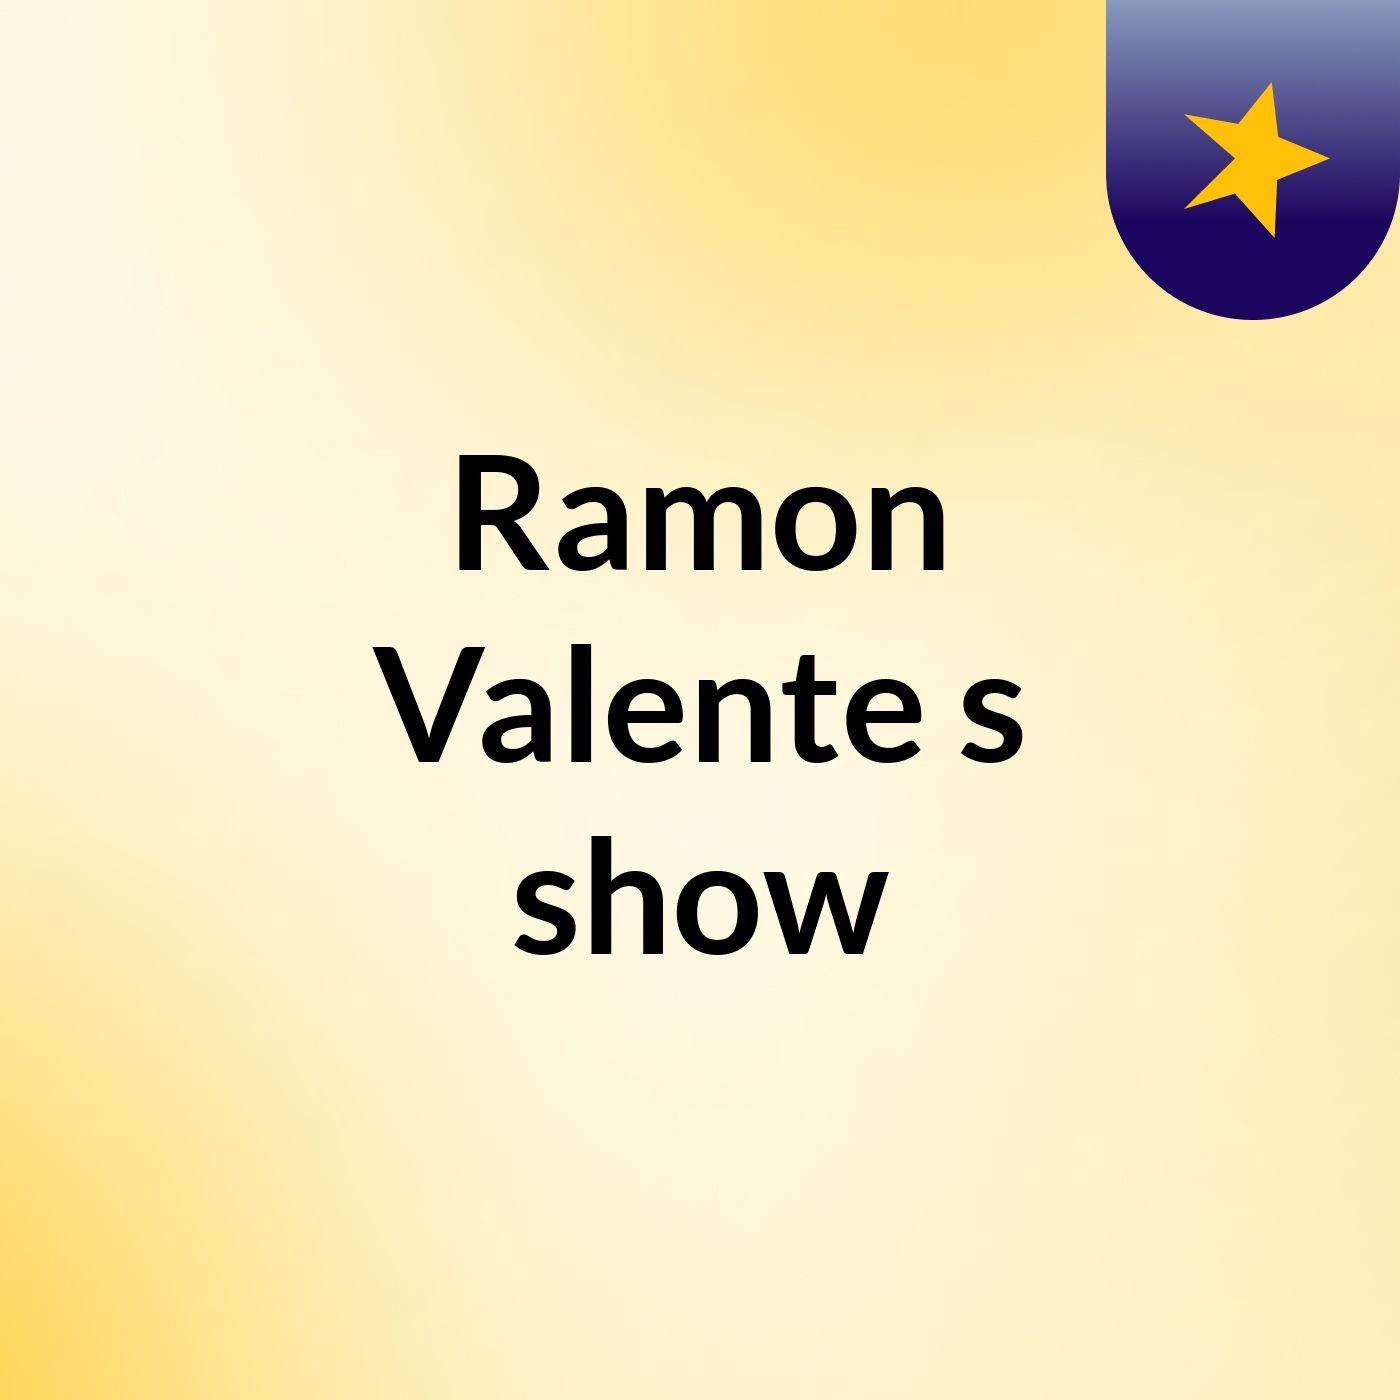 Ramon Valente's show